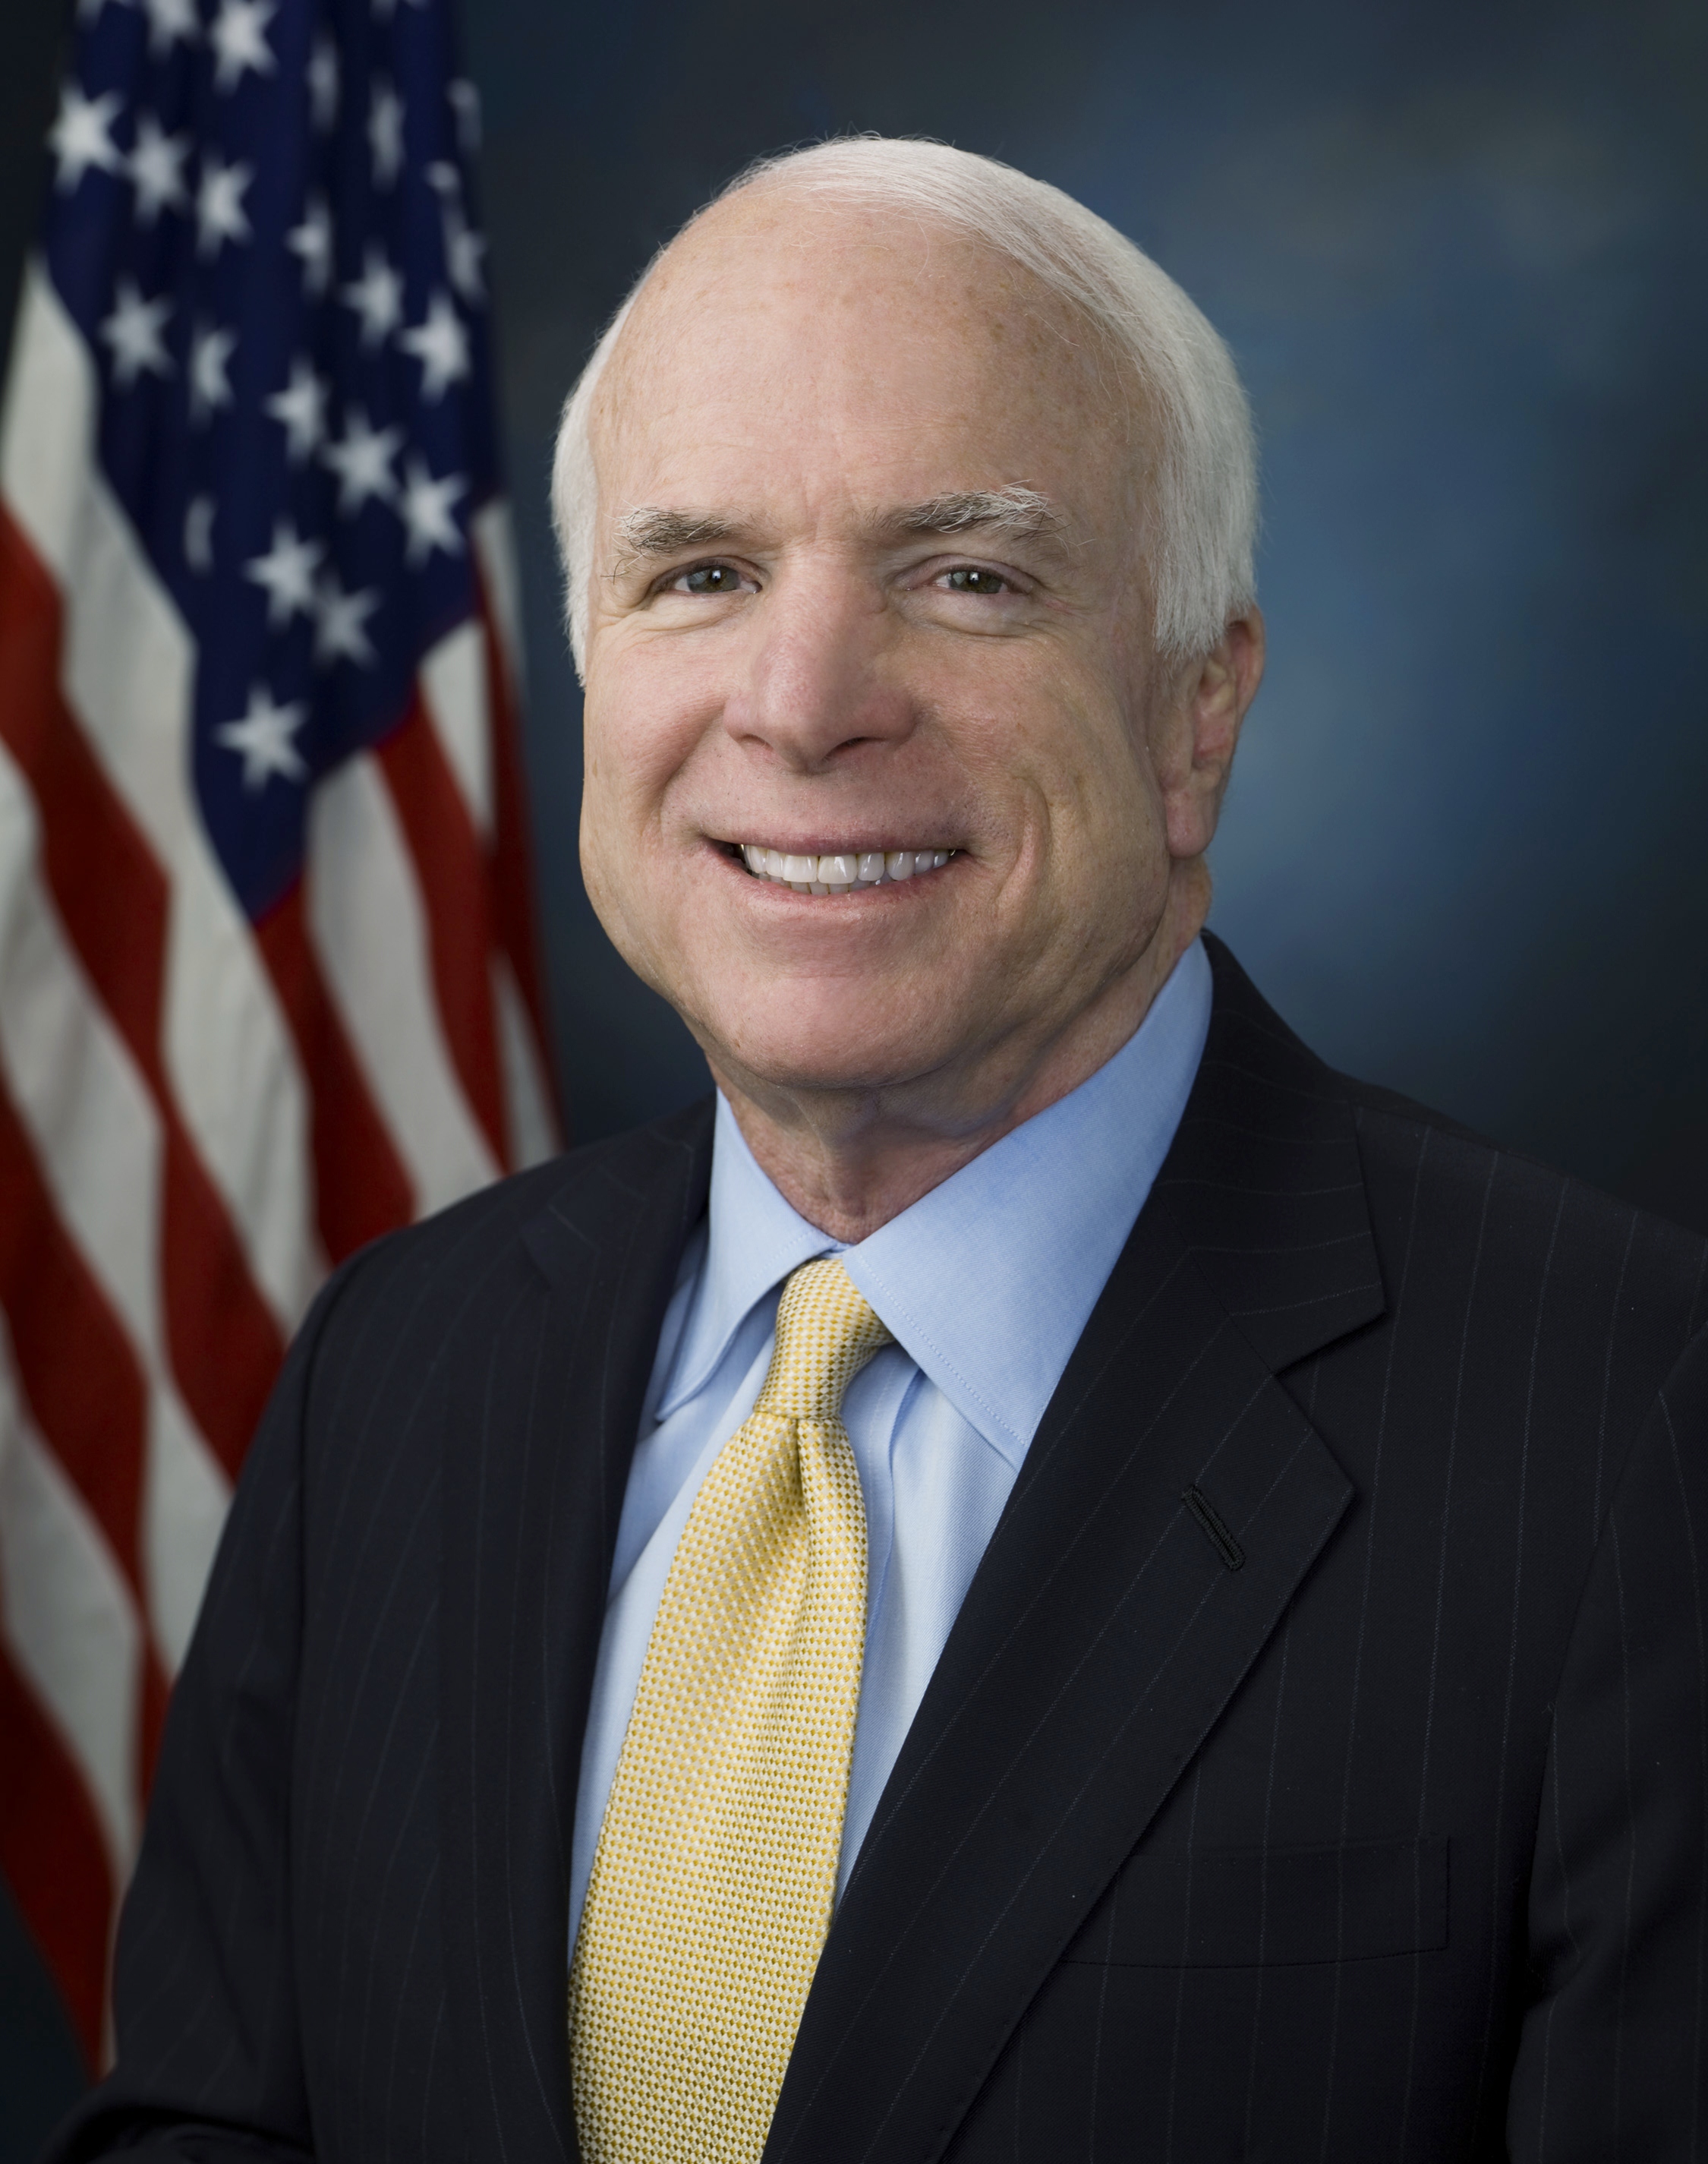 Senator John McCain supports state regulation of sports betting